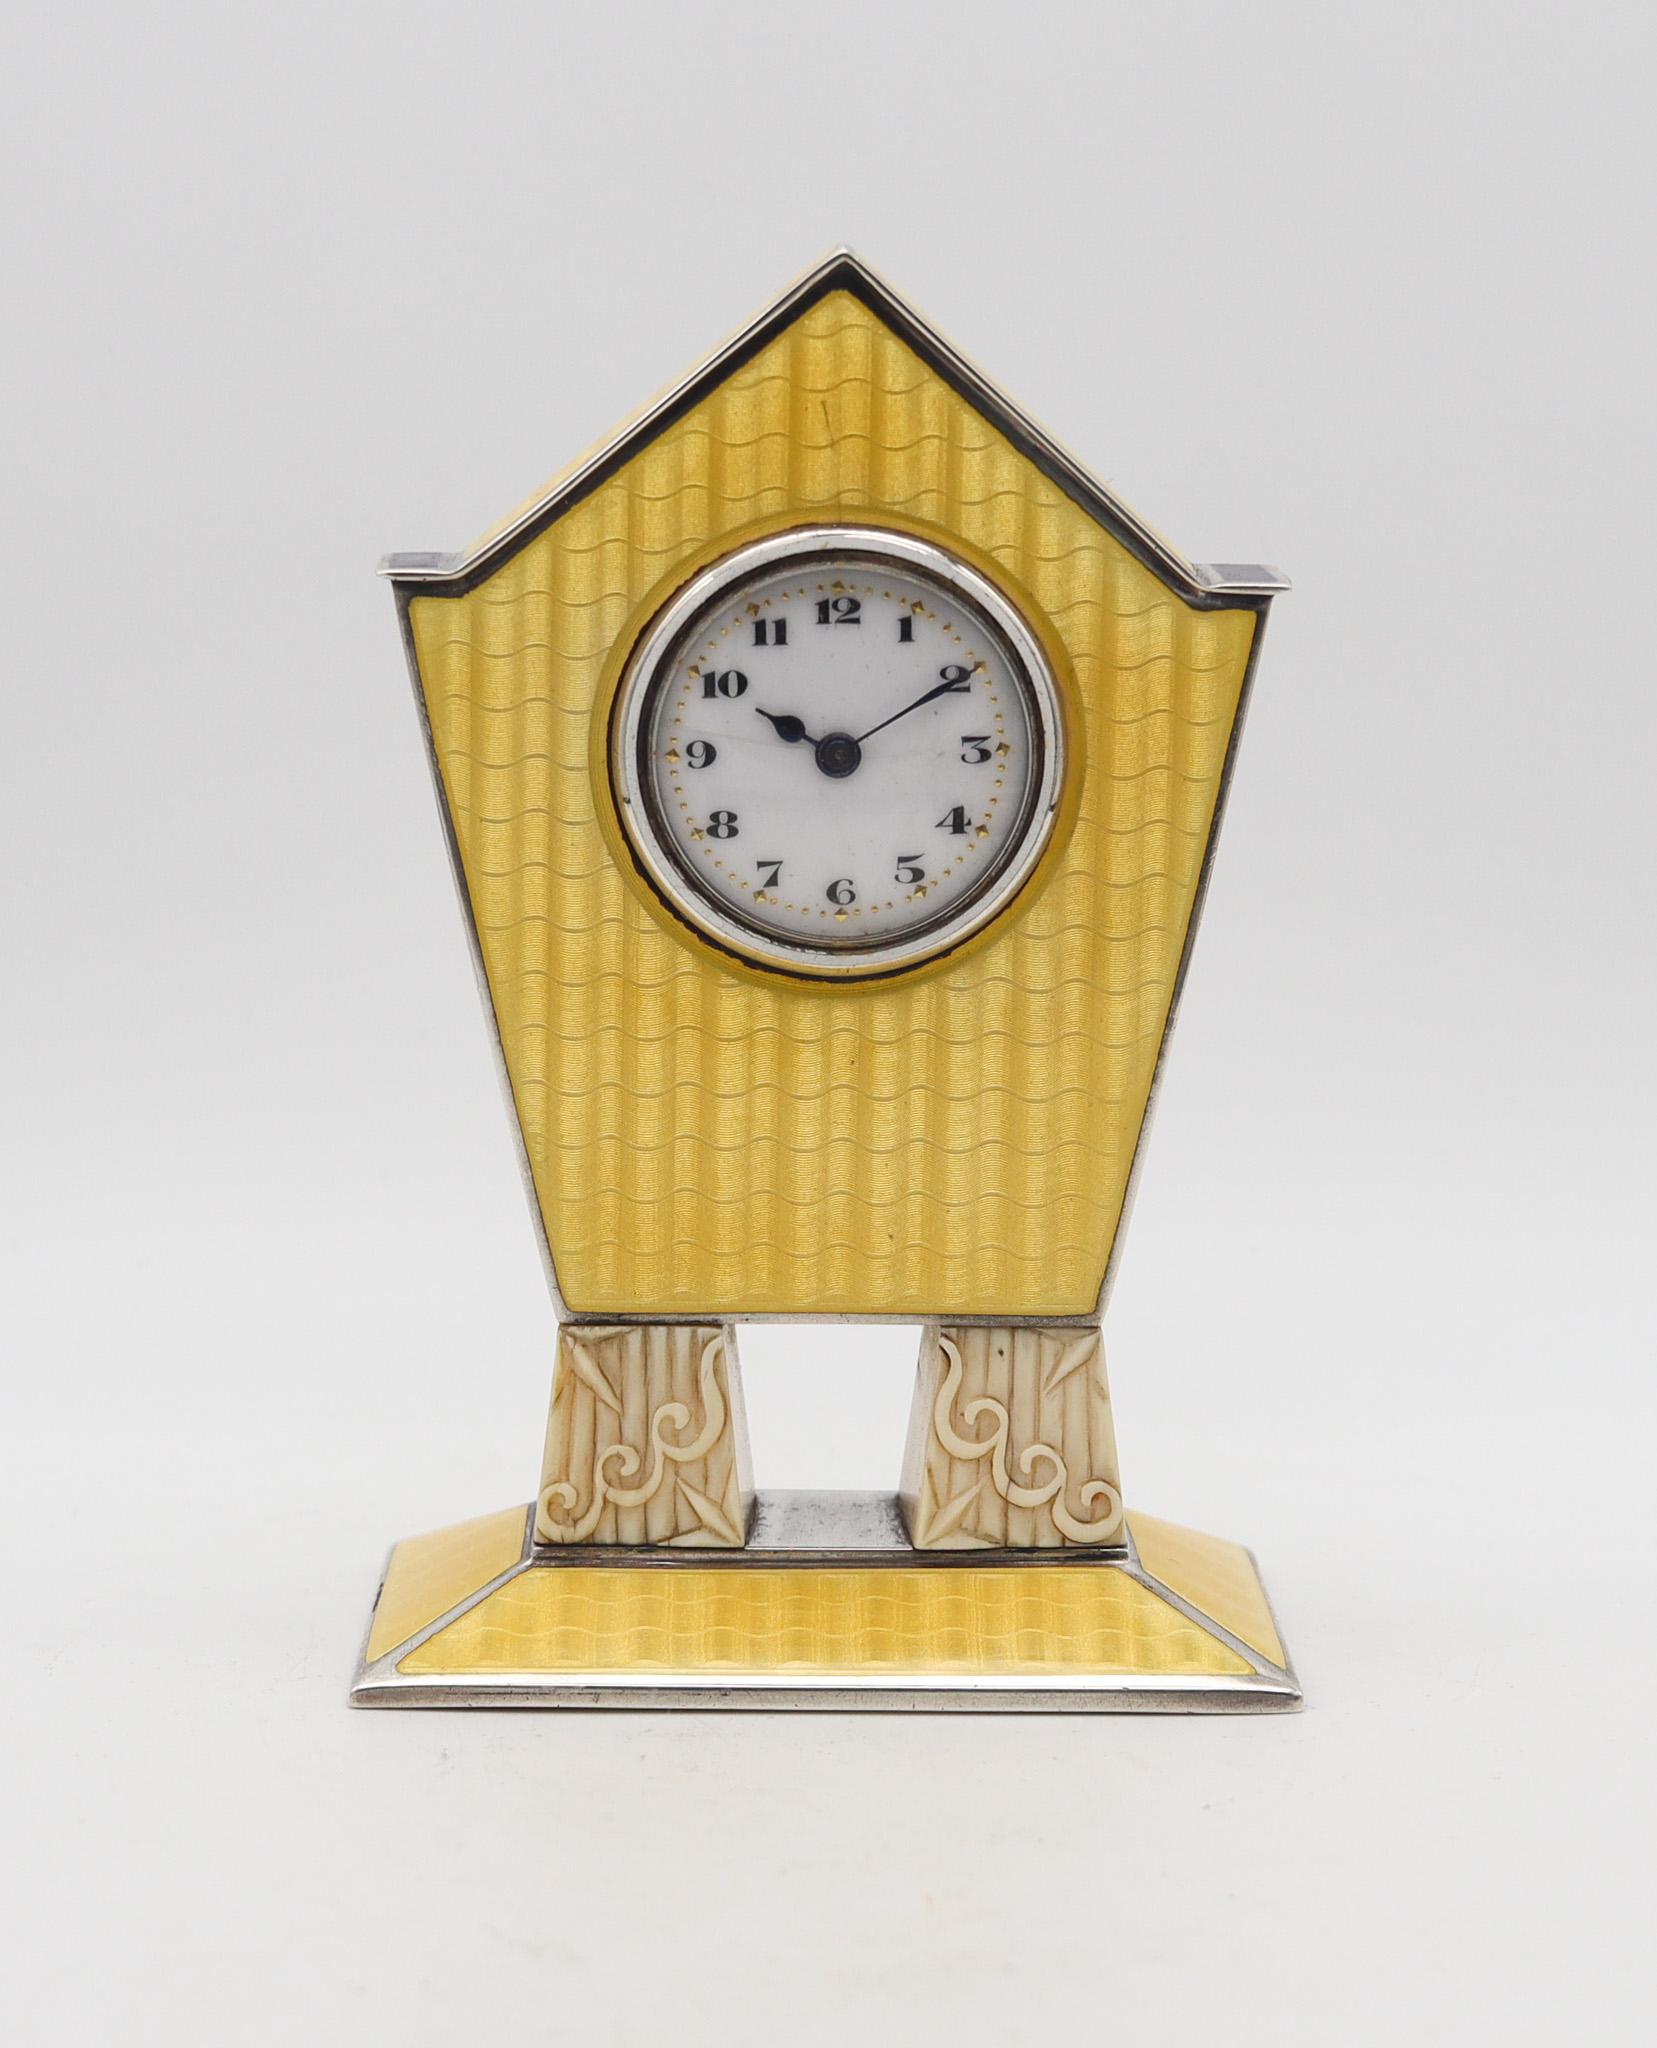 Horloge de bureau art déco boudoir miniature.

Très belle horloge de bureau miniature, fabriquée à Pforzheim en Allemagne pendant la période art déco, dans les années 1920. La qualité de fabrication de cette horloge de boudoir est exceptionnelle,